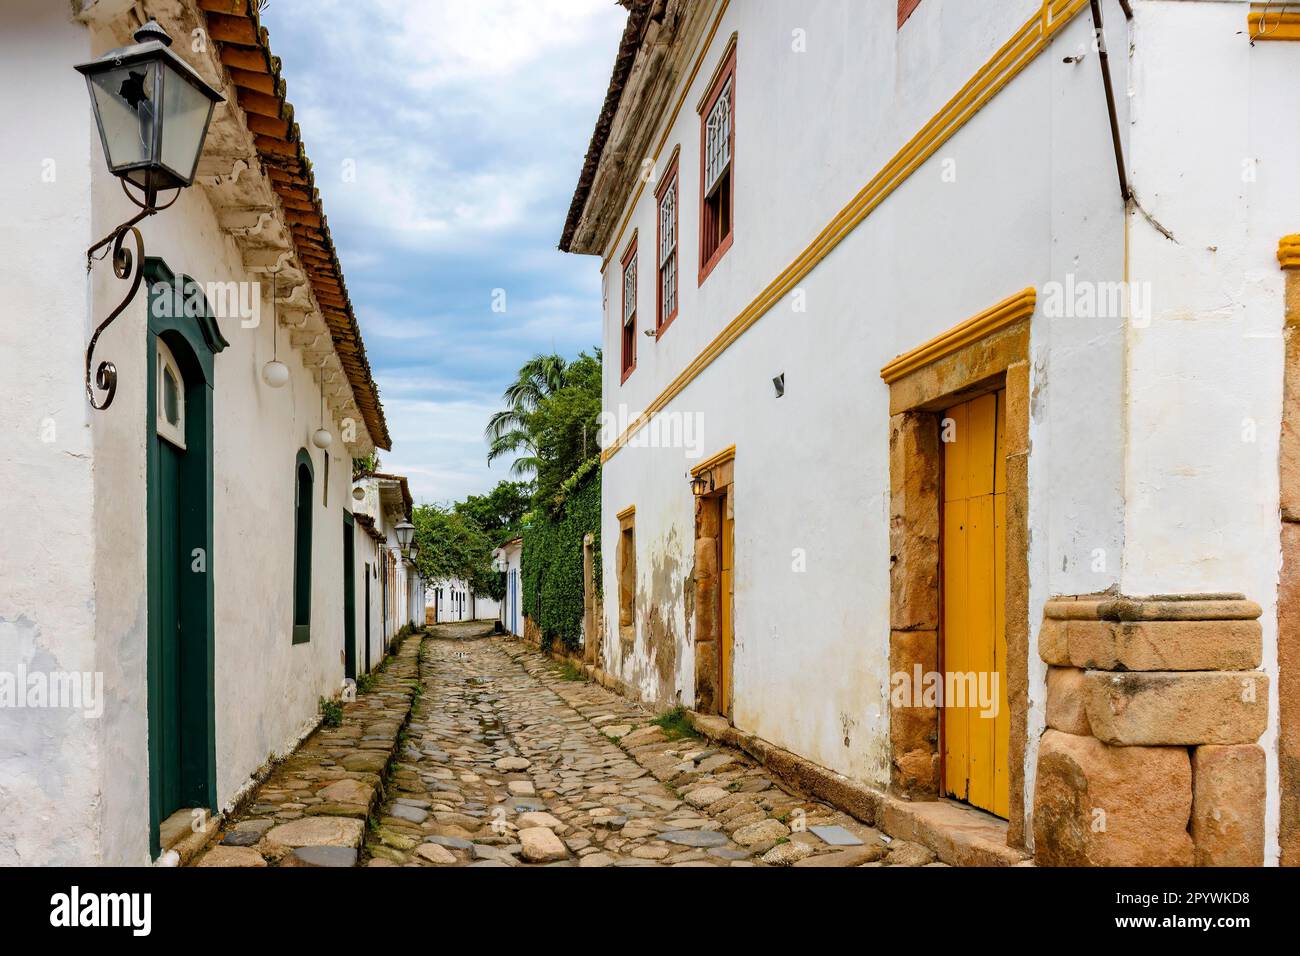 Rue traditionnelle dans la ville historique de Paraty dans l'État de Rio de Janeiro avec pavé pavé pavé et maisons de style colonial, Brésil Banque D'Images